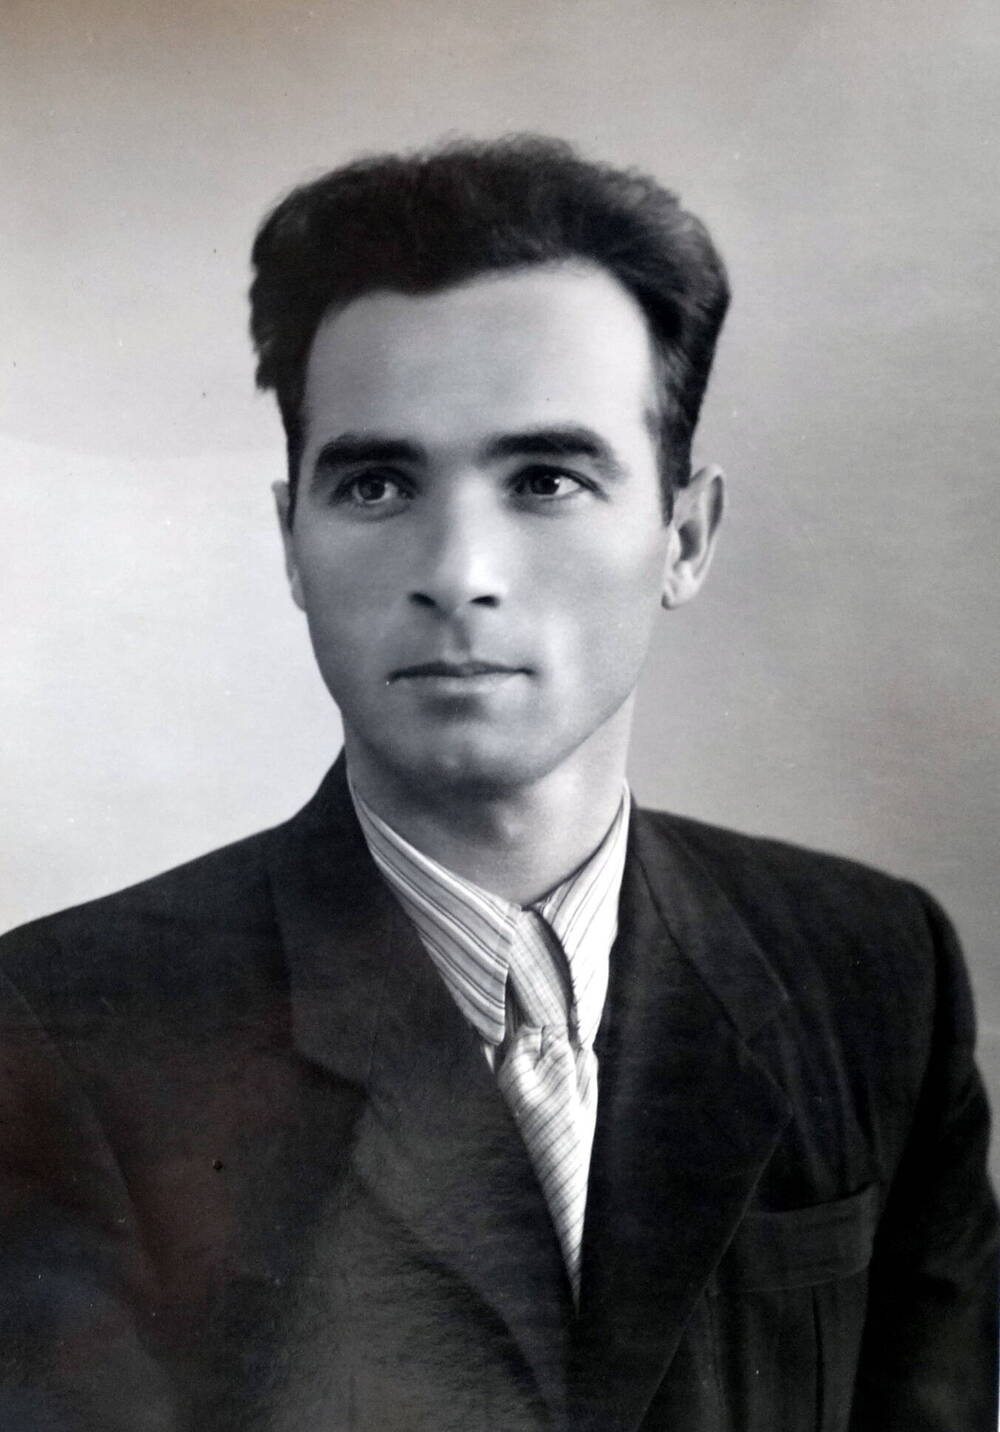 Фото. Борис Ходов - актер Осетинского драмтеатра, 1960-е г.г.